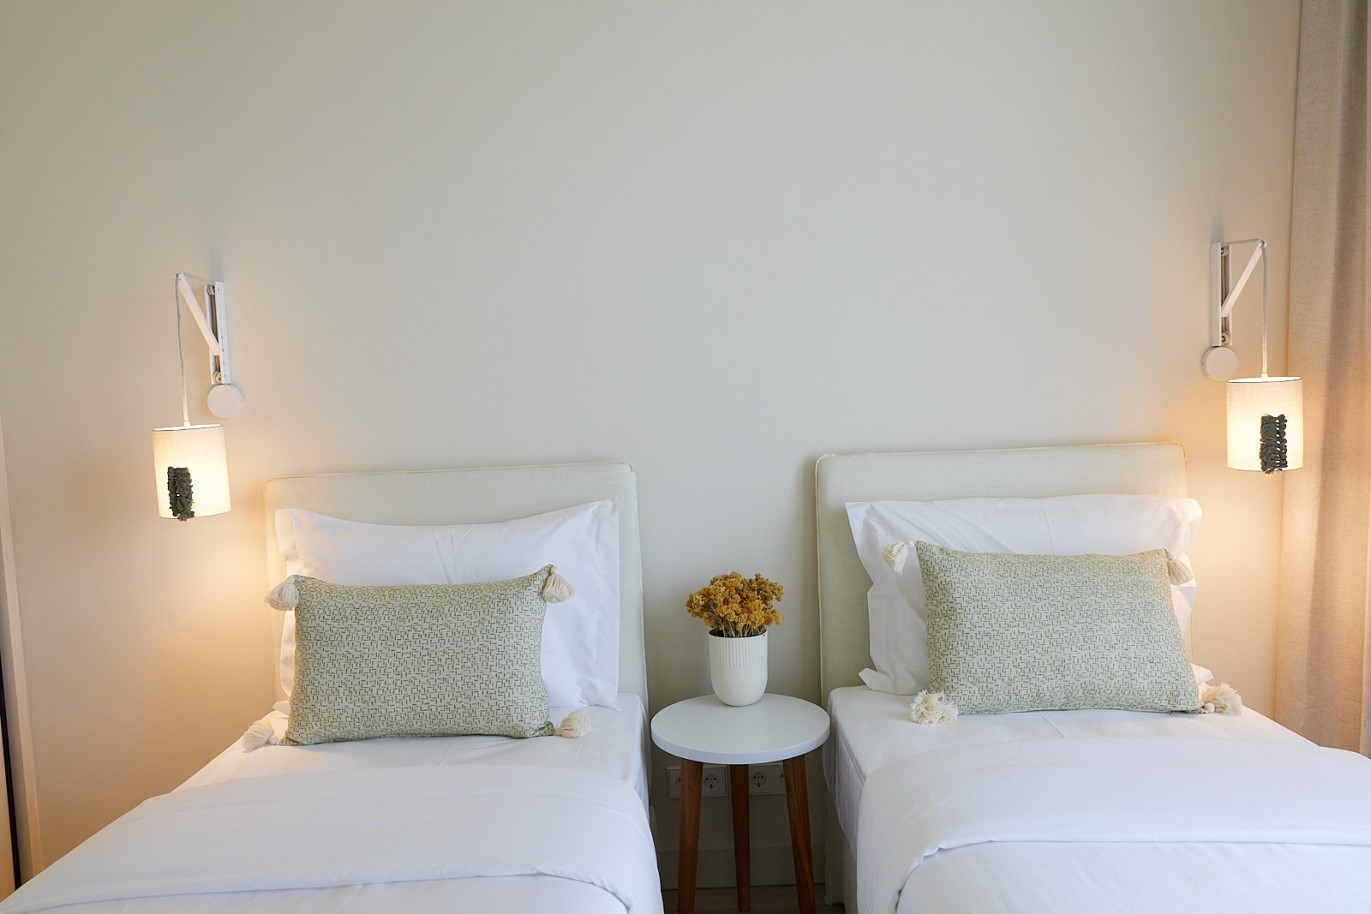 3 bedroom flat in resort, for sale in Porches, Algarve_230744